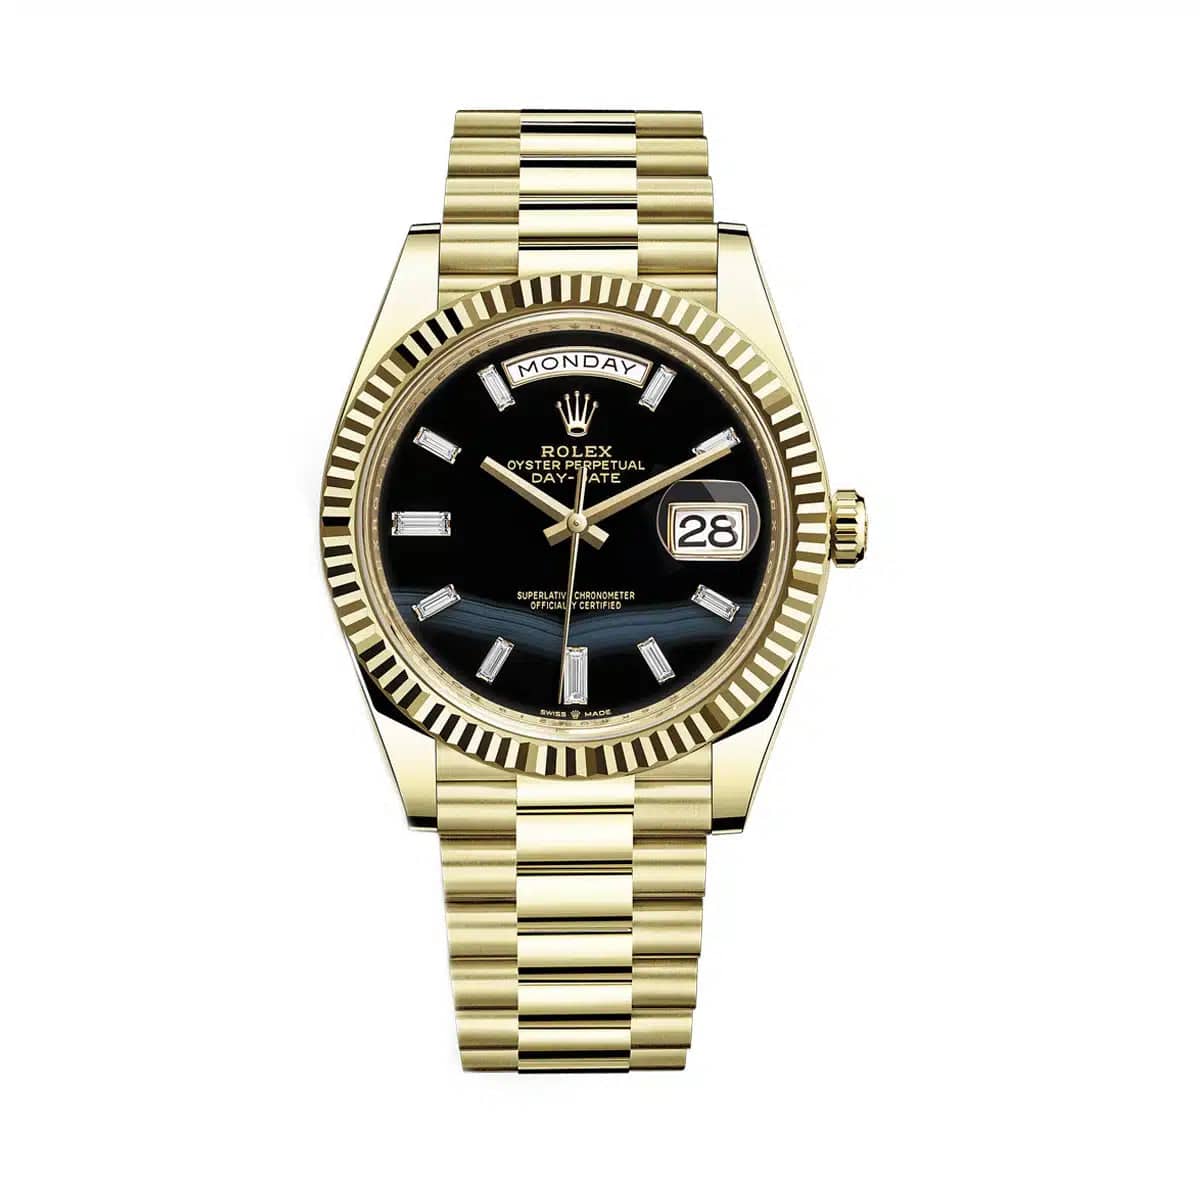 Luxury Watch Rolex Day-Date 40 Yellow Gold Black Onyx Dial 228238 Wrist Aficionado